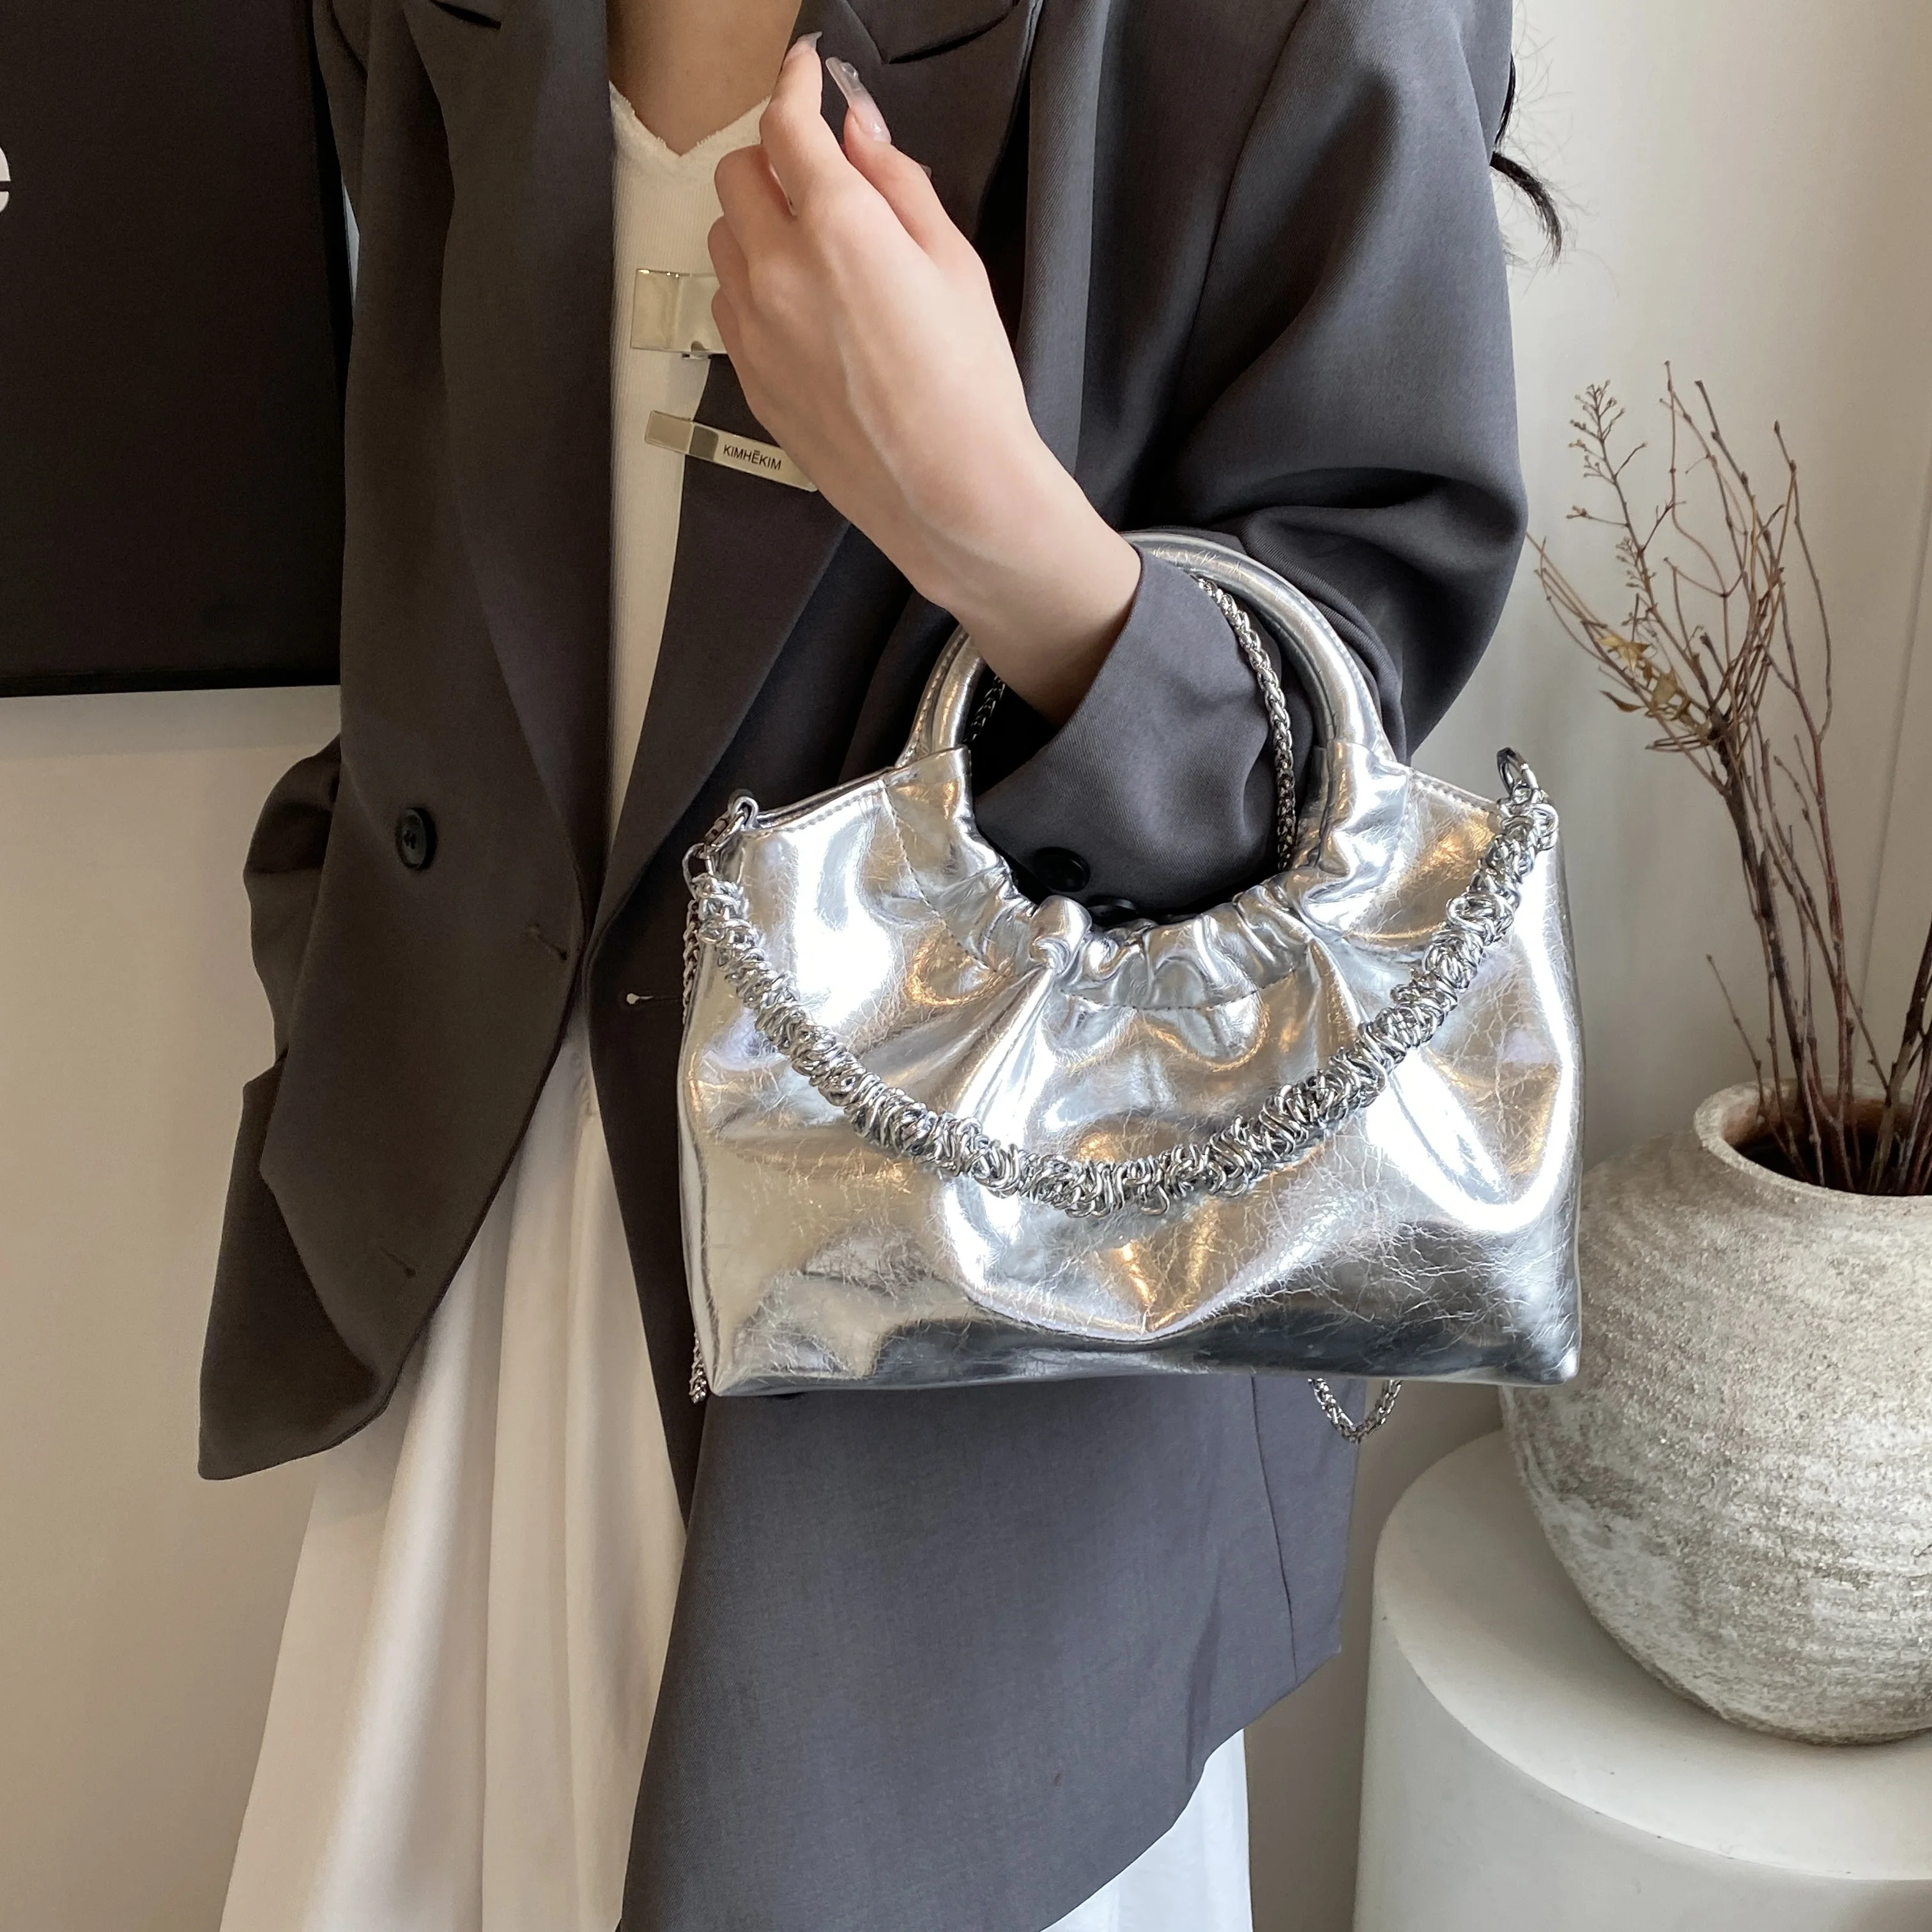 Borsa a mano in argento borsa da donna con manico ad anello rotondo borsa a tracolla in morbida pelle di qualità borsa a tracolla con catena di moda borse di lusso femminili